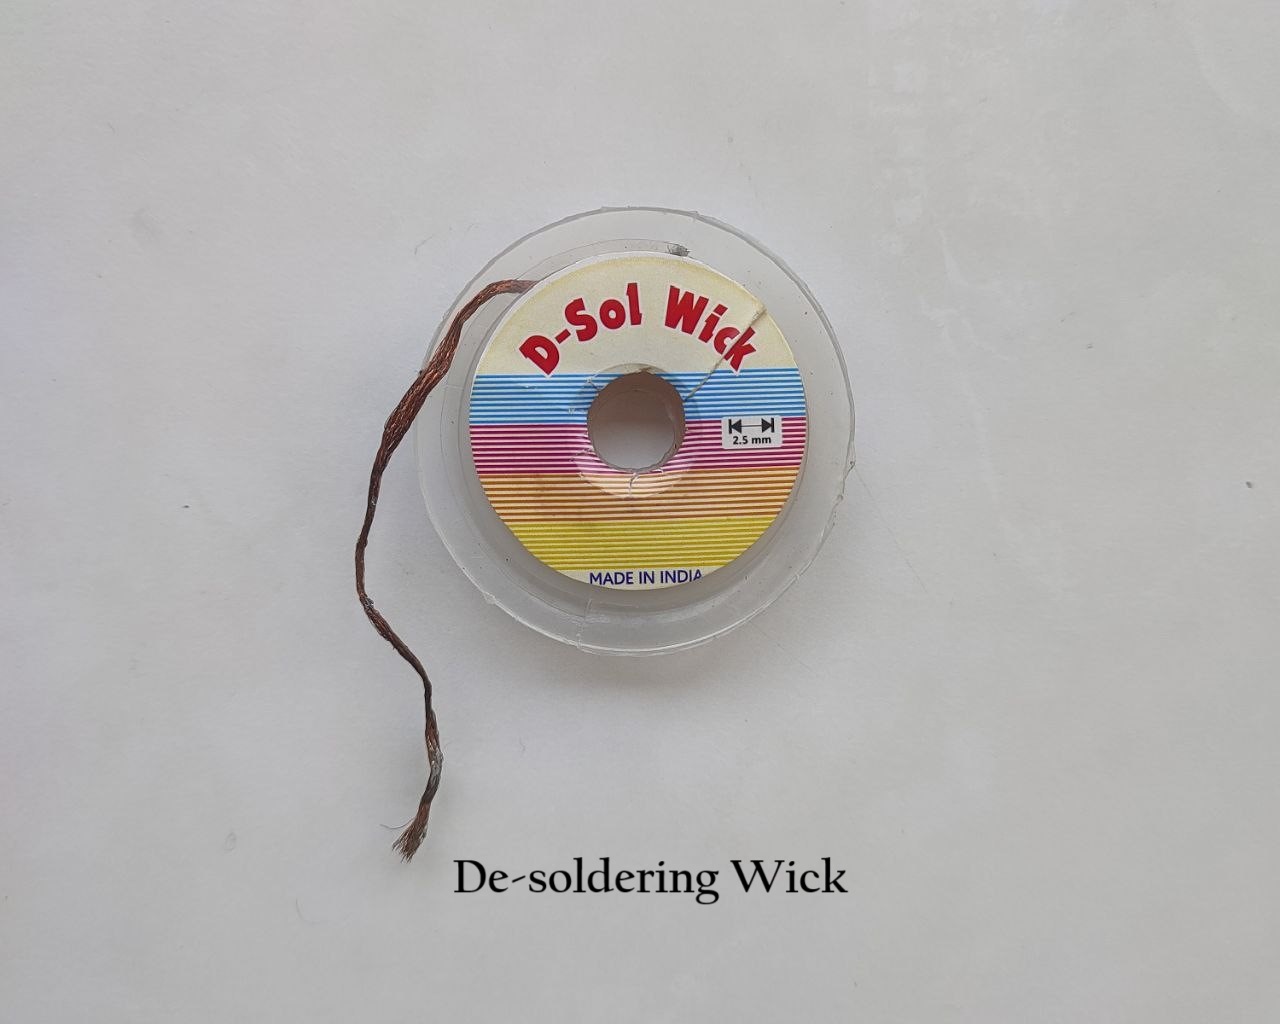 De-soldering wick